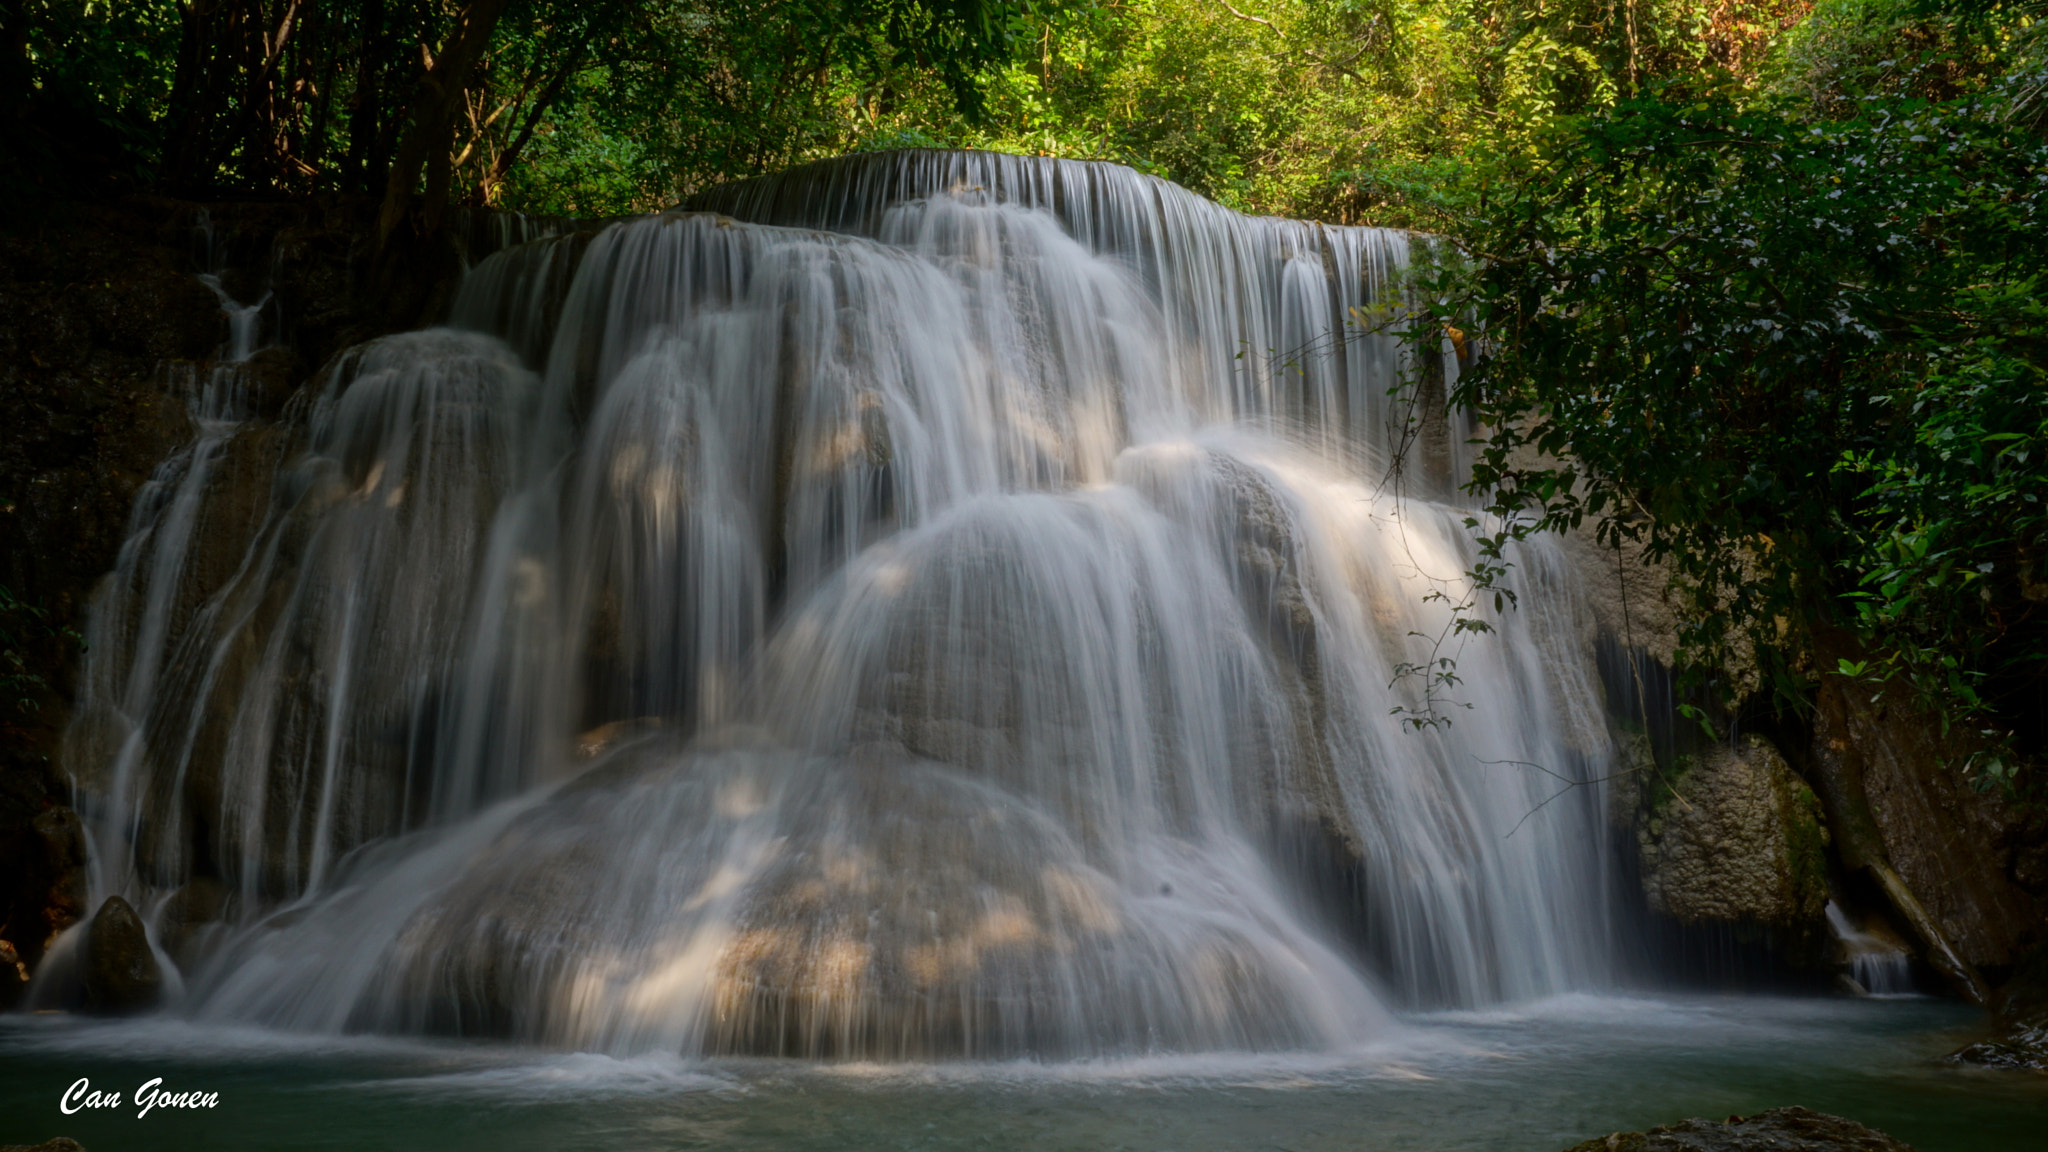 Sony a6000 sample photo. Huay maekamin waterfall, thailand photography